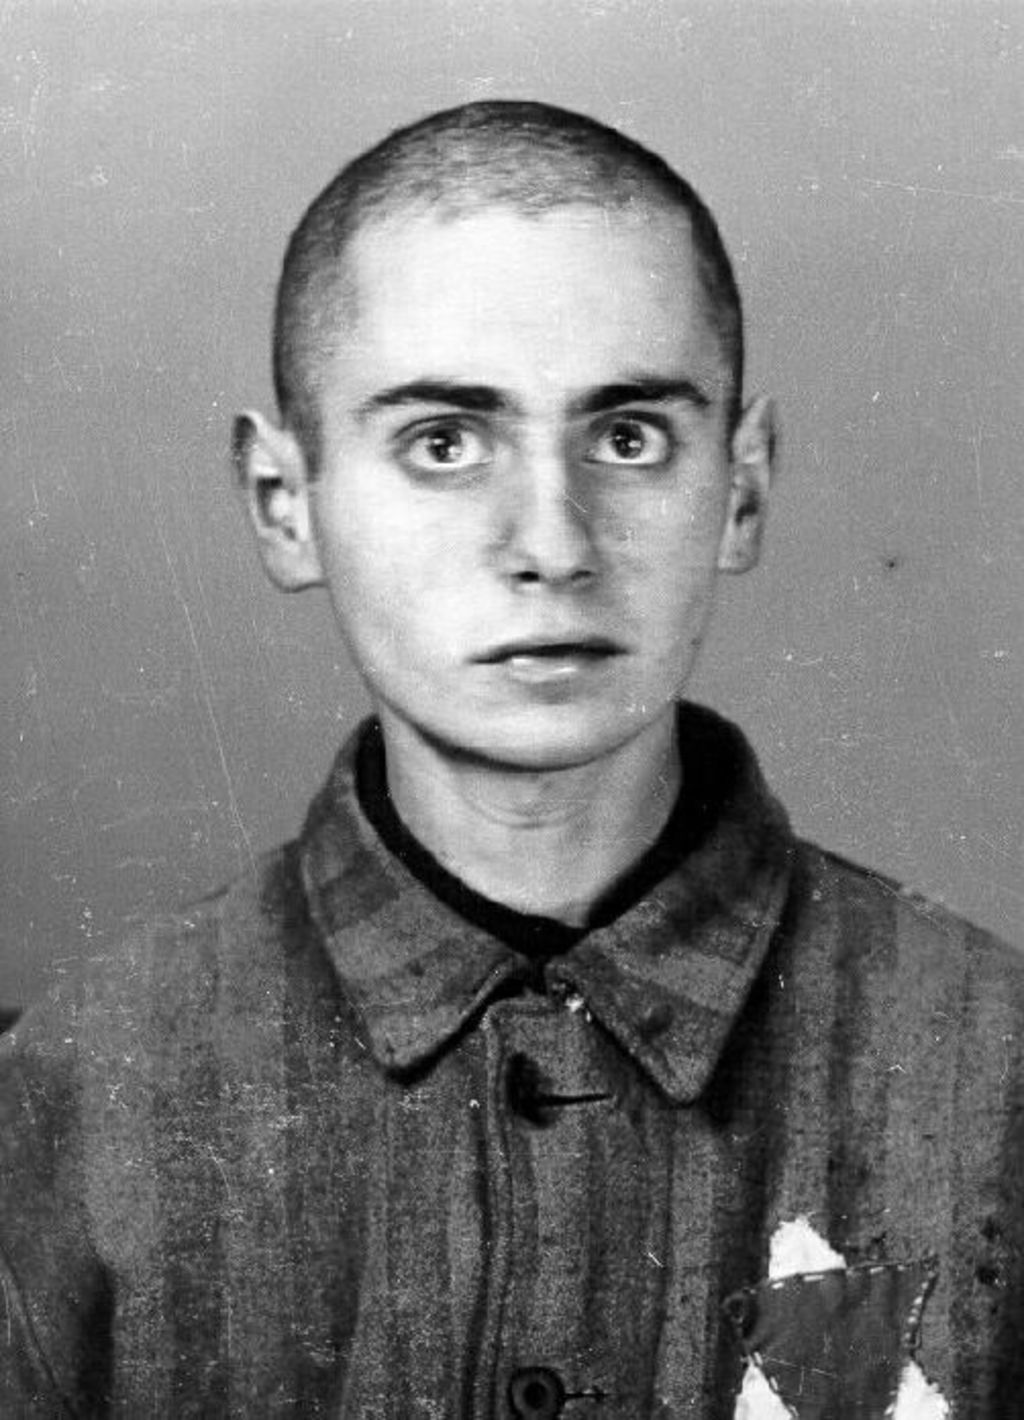 Exponat: Foto: Erfassungsphoto aus dem KZ Auschwitz, 1942